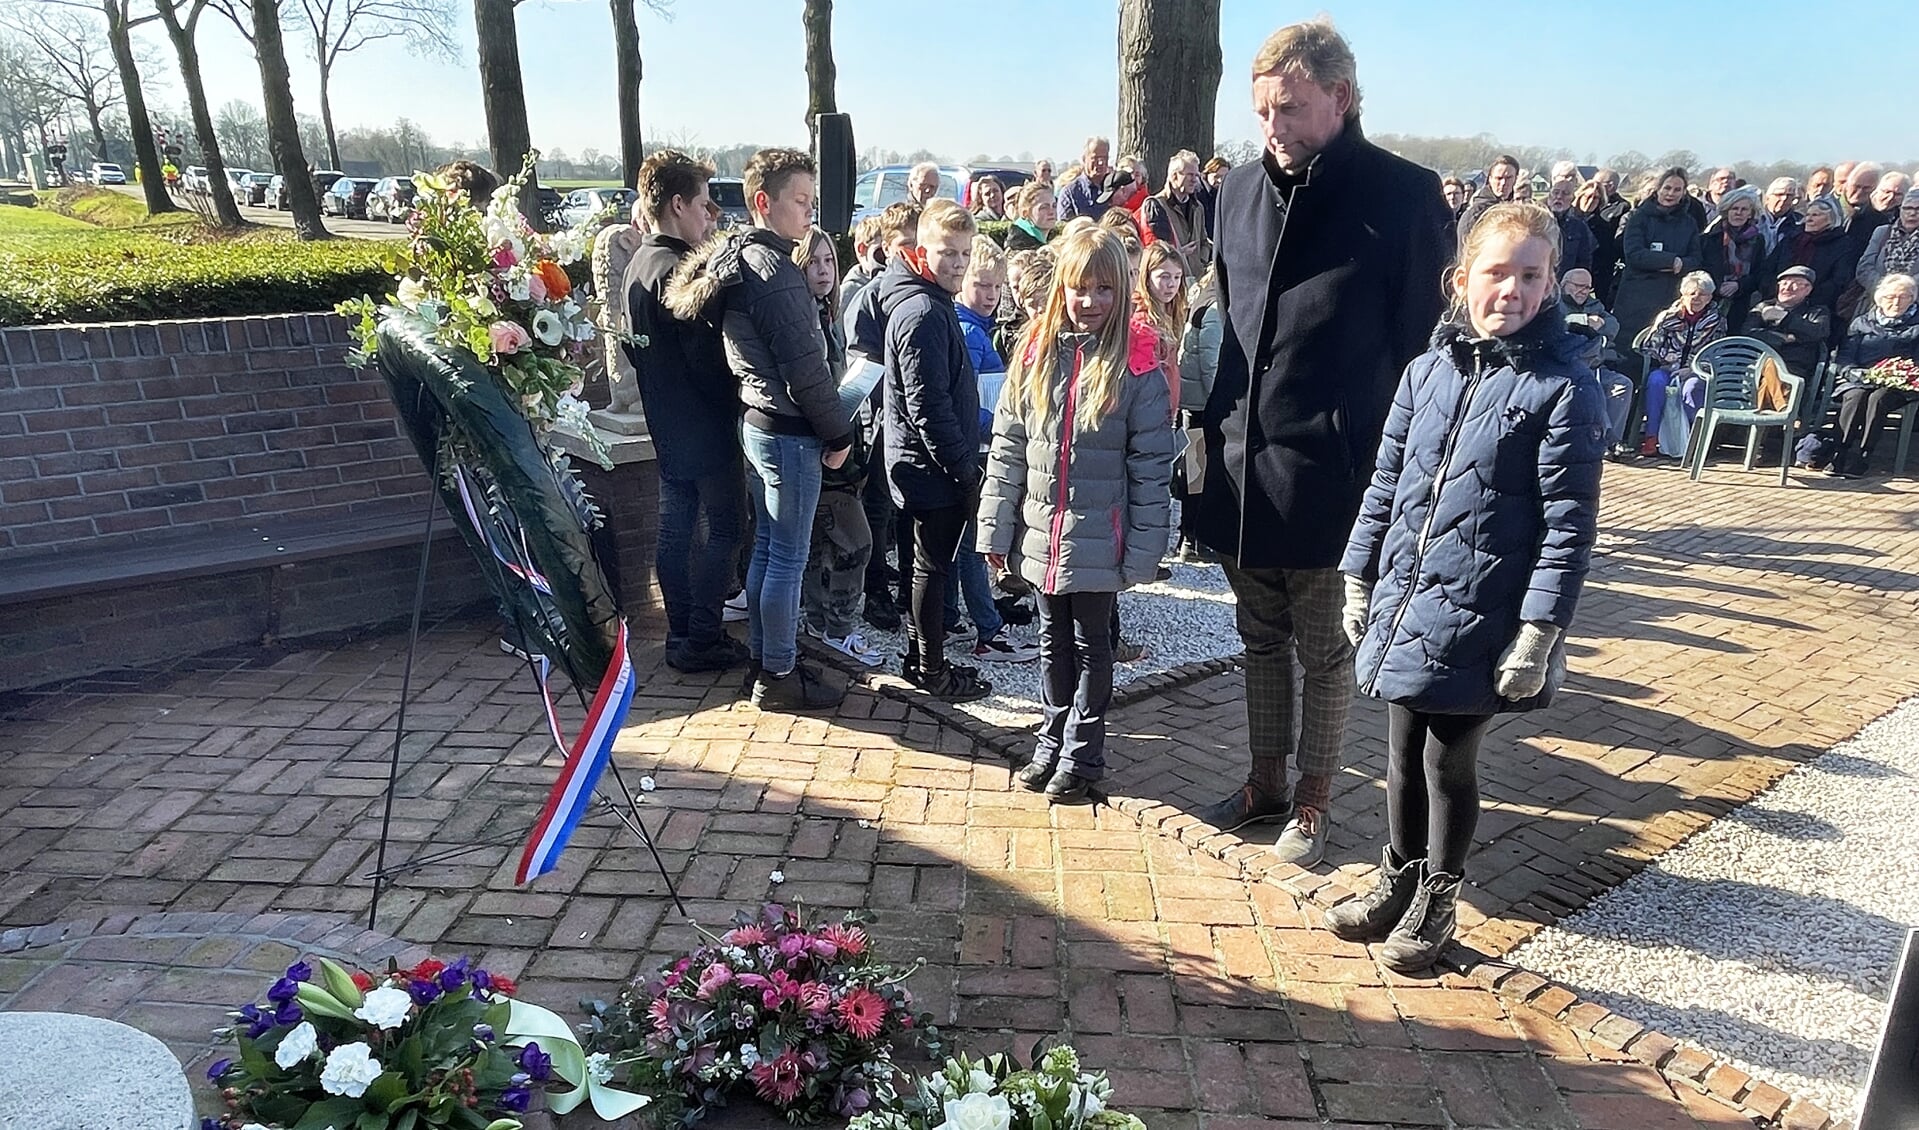 Burgemeester Anton Stapelkamp van Aalten was ook bij de herdenking. Foto: Roel Kleinpenning